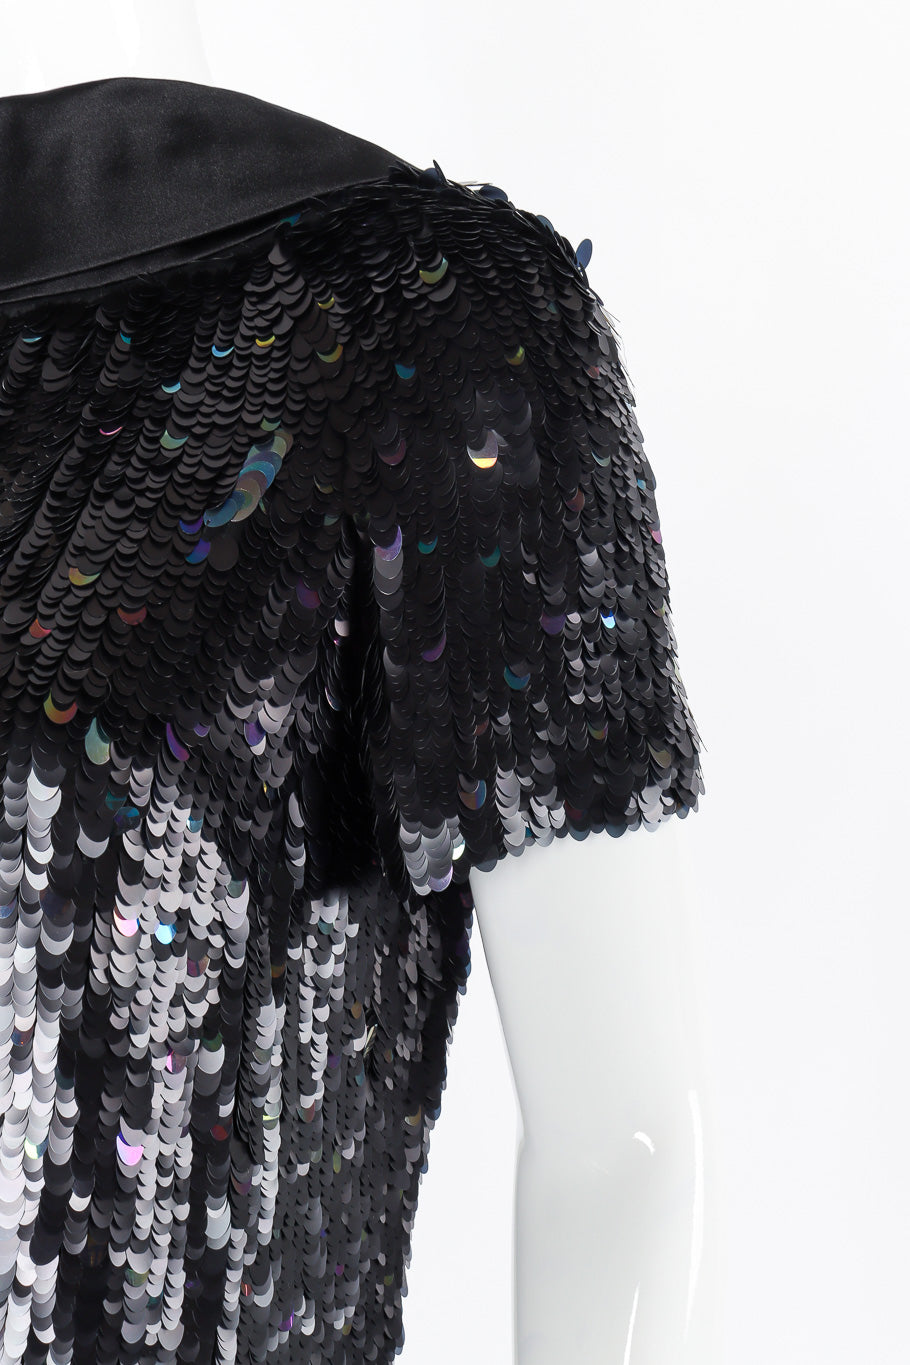 Louis Vuitton sequin blouse fabric detail @recessla